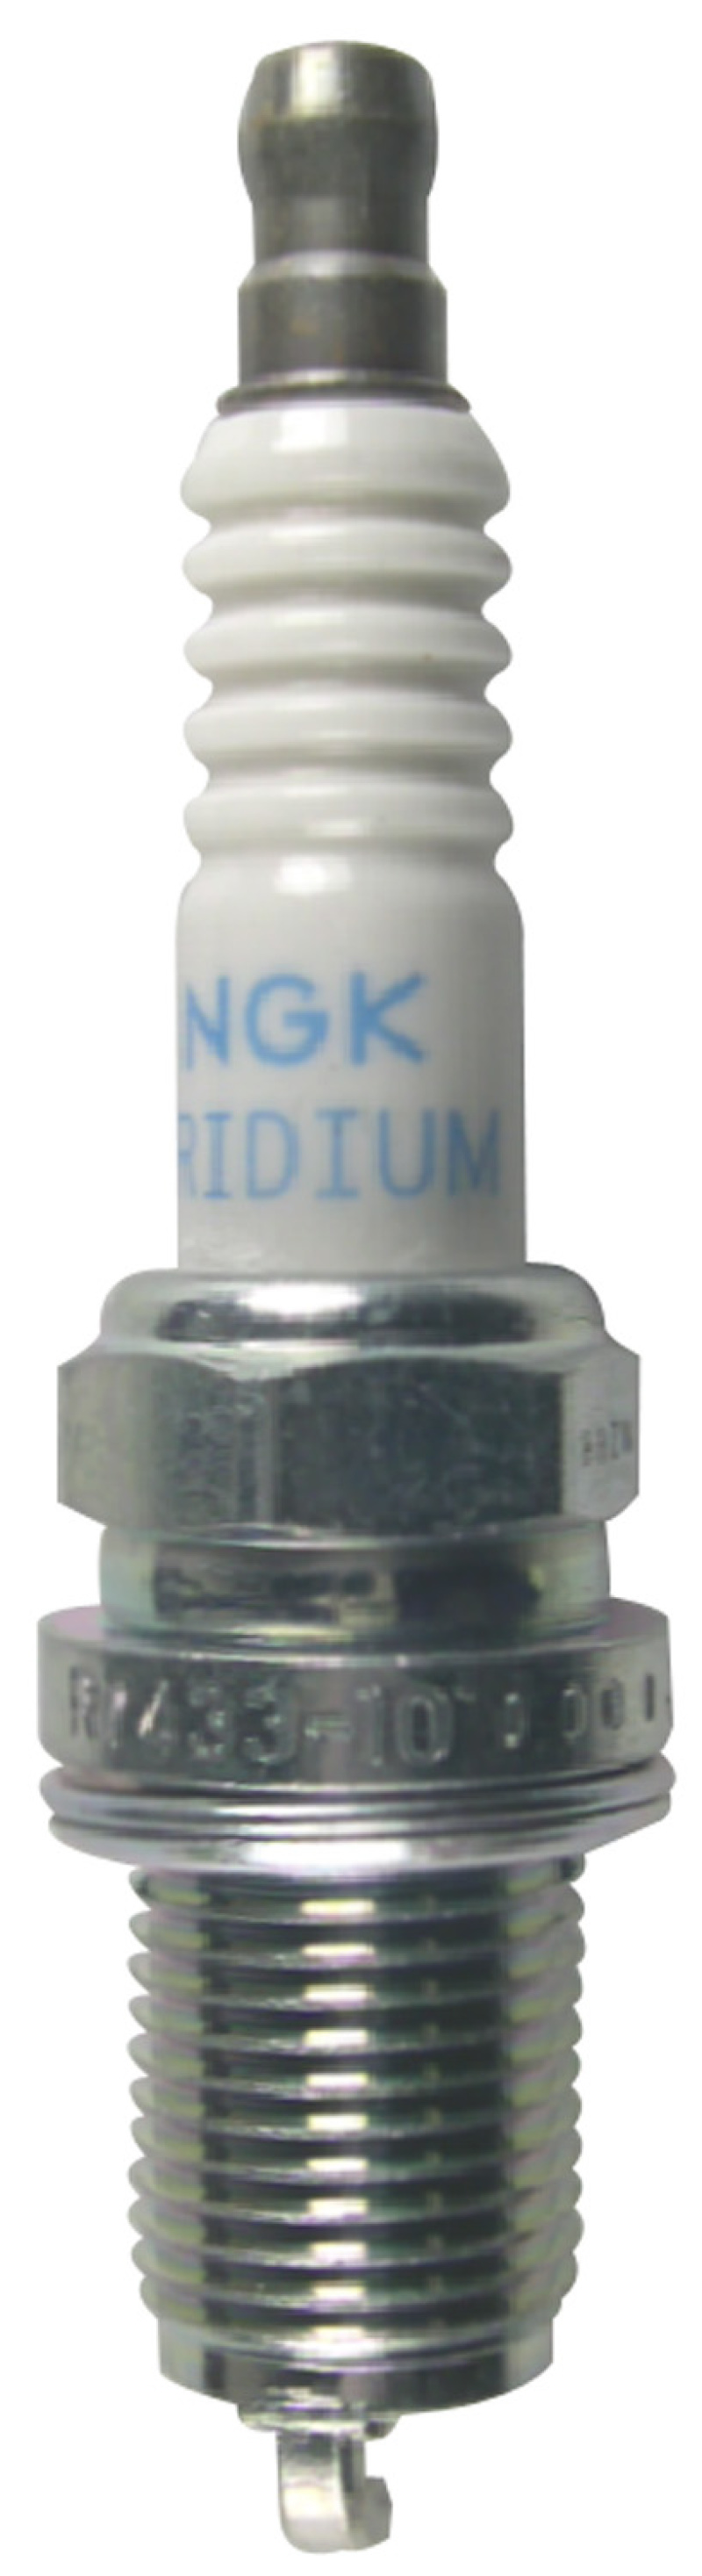 NGK Racing Spark Plug Box of 4 (R7433-9) - 4660